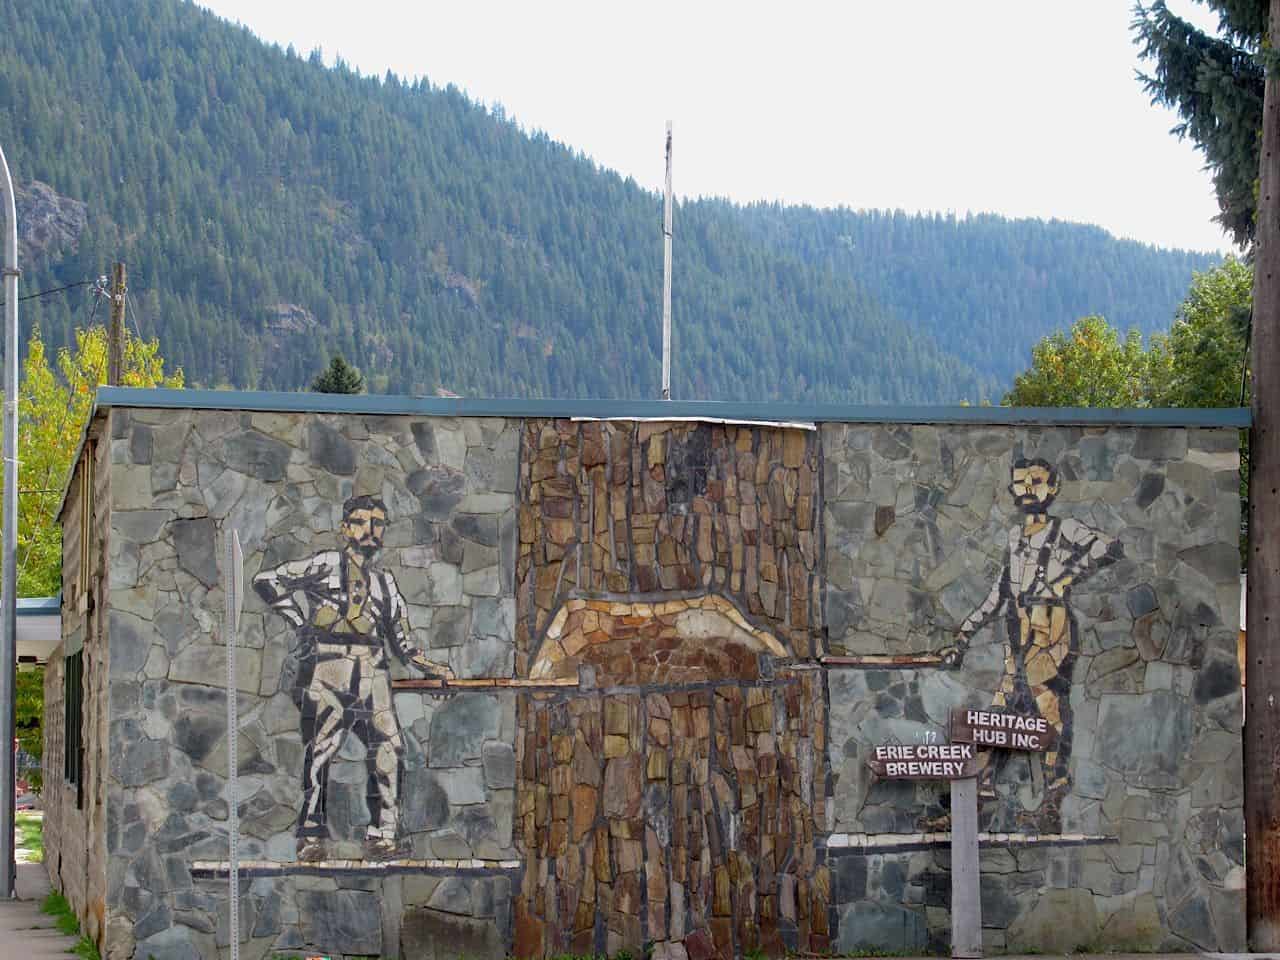 Springboard loggers stone mural in Salmo BC Canada.